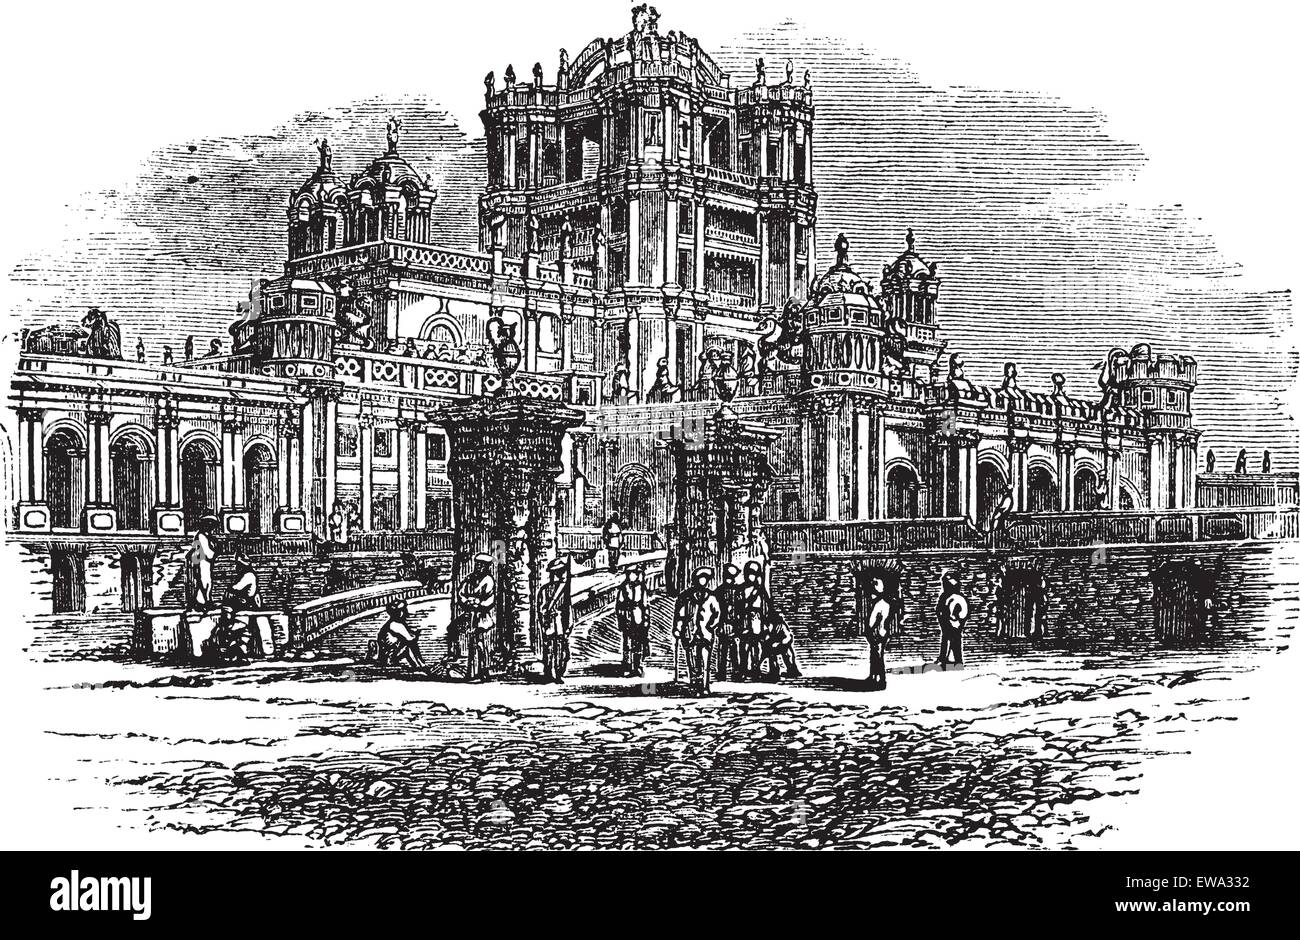 La Martinière College de Lucknow, Uttar Pradesh, en Inde, au cours des années 1890, vintage la gravure. Vieille illustration gravée de La Martinière College. Illustration de Vecteur